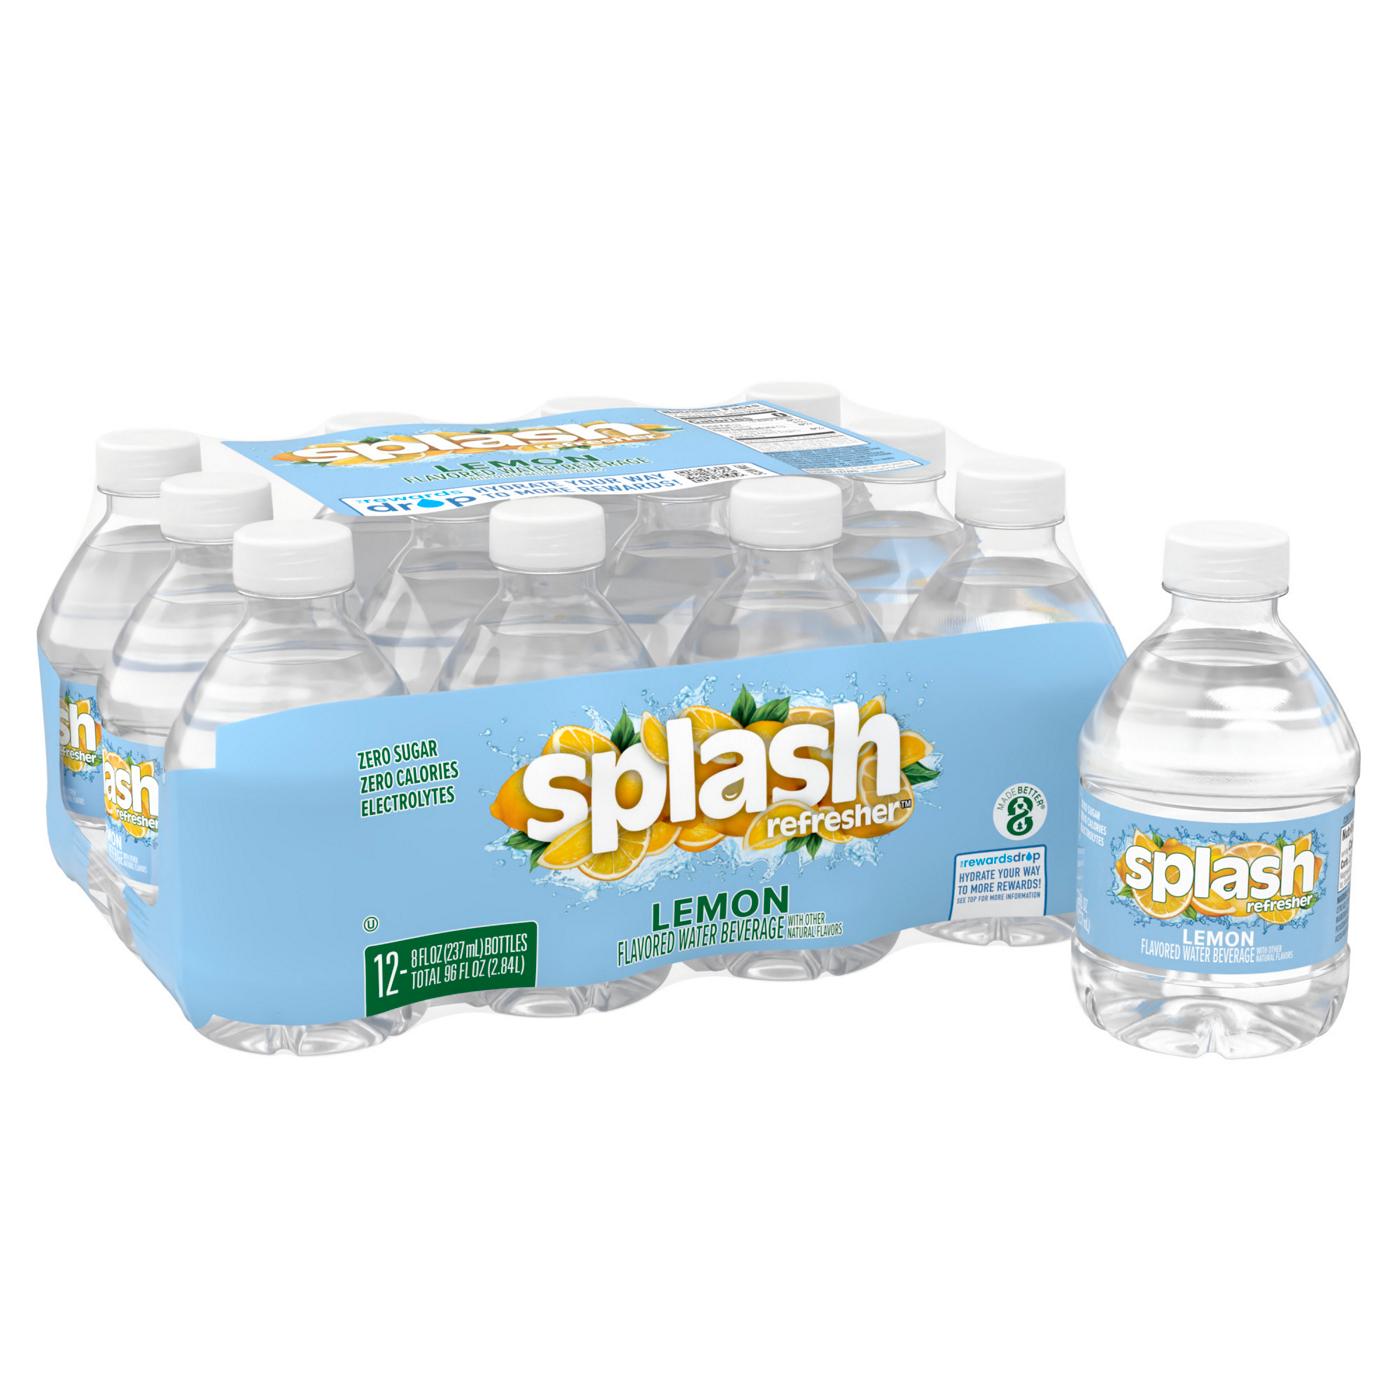 SPLASH Lemon Flavor Water Beverage 8 oz Bottles; image 1 of 6